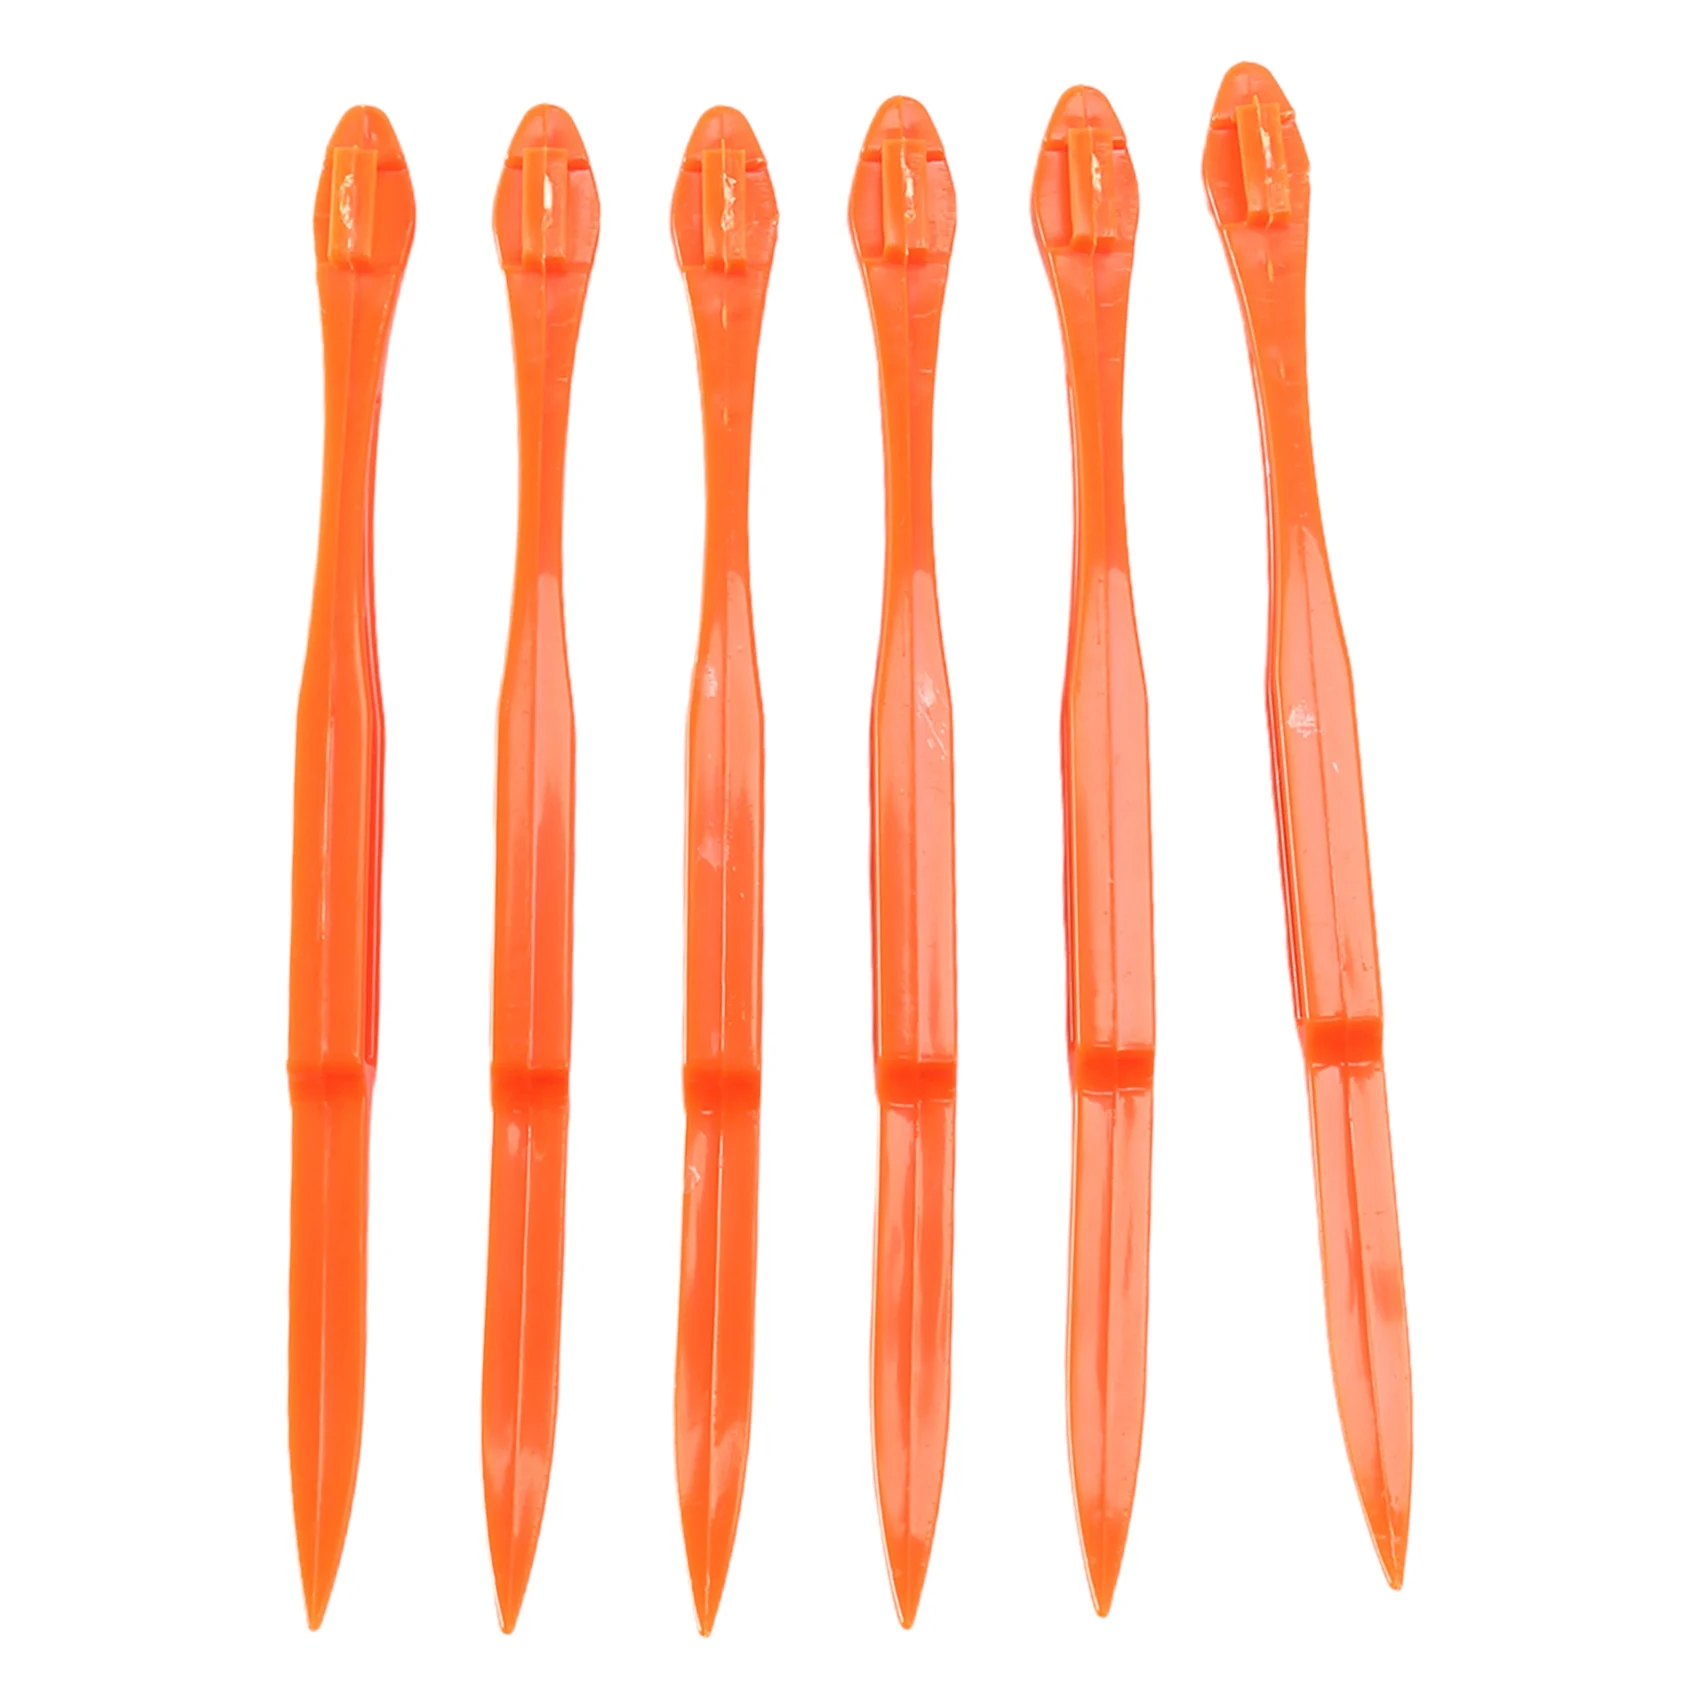 

6PCS Easy Orange Citrus Peeler in Bright Orange Color Kitchen Tool